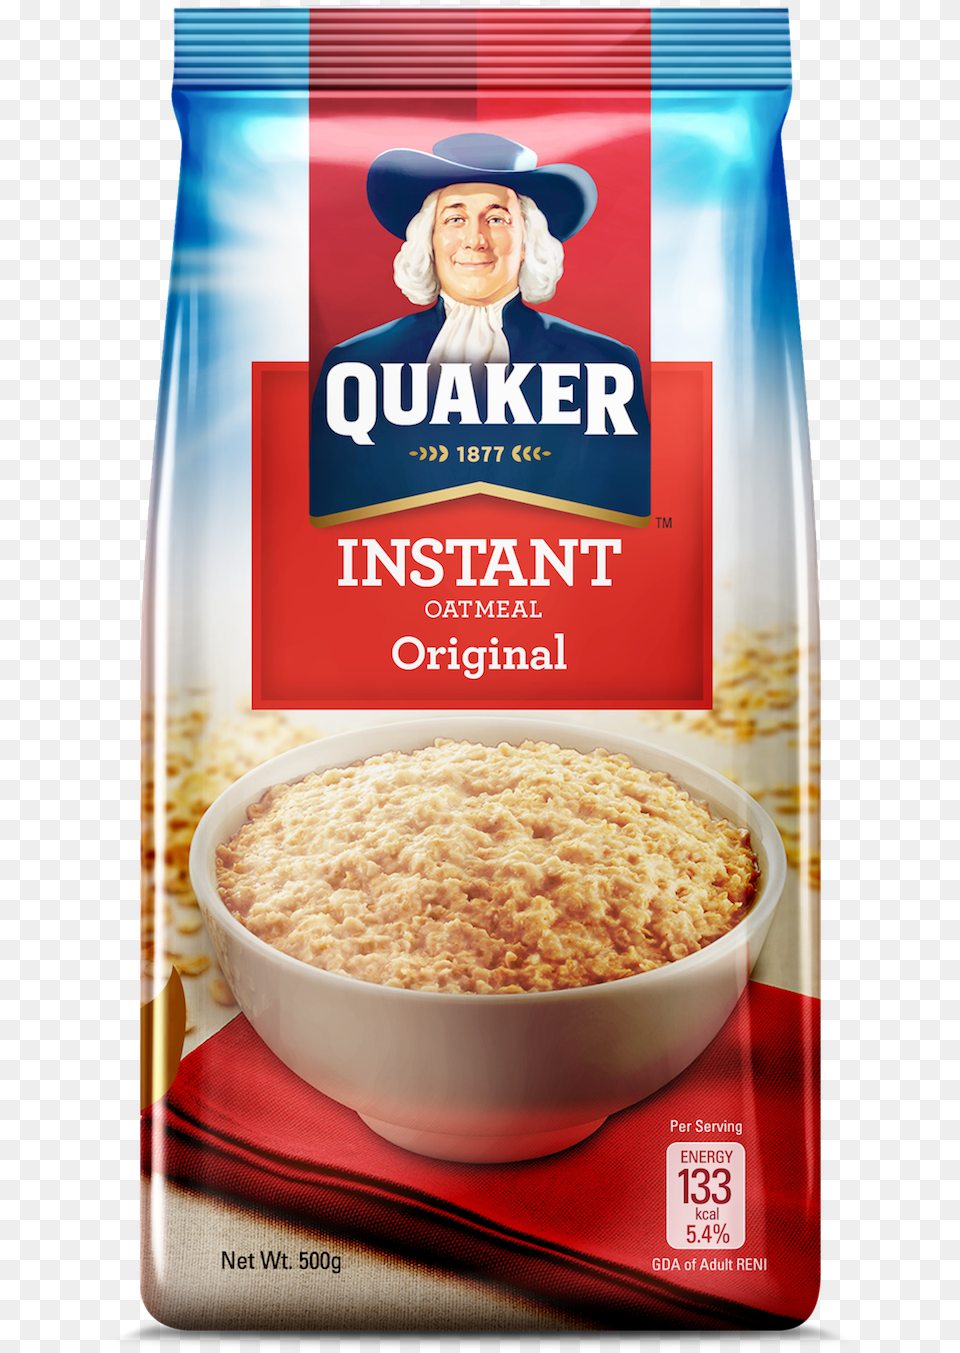 Quaker Oats Quaker Oats Milk Flavor, Food, Breakfast, Oatmeal, Person Free Transparent Png